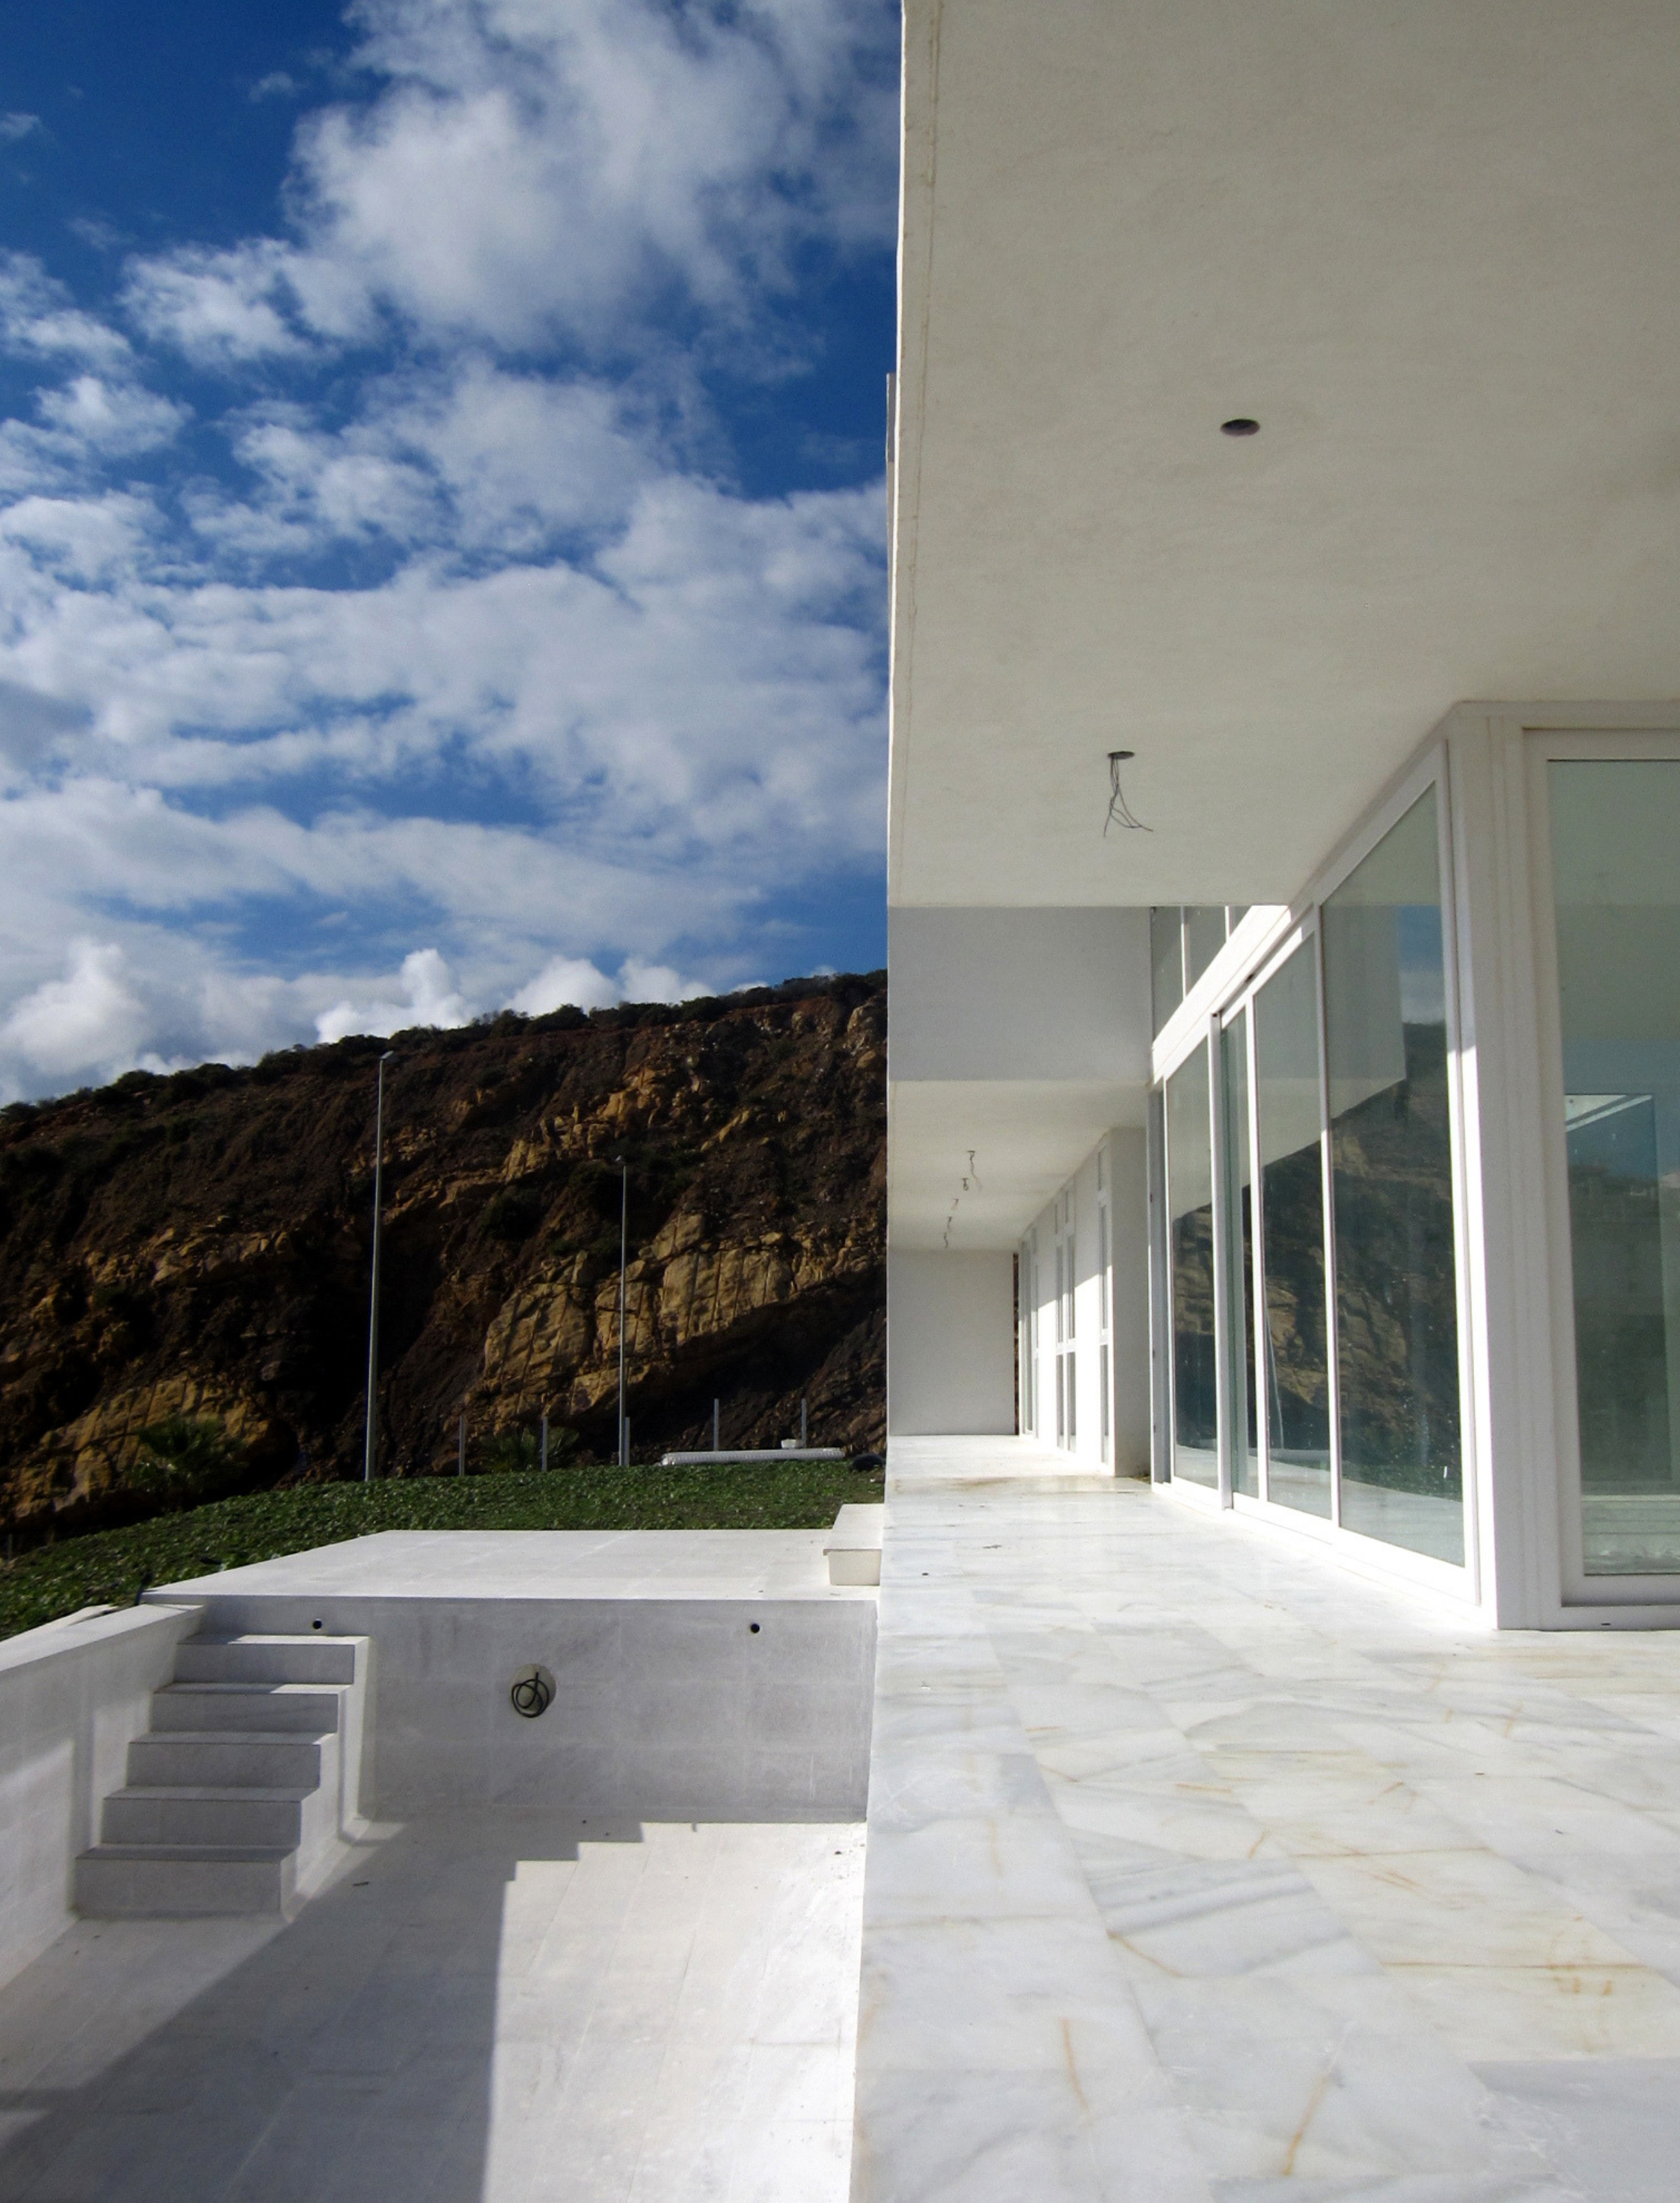 6 viviendas unifamiliares. Un proyecto del estudio de arquitectura FH2L Arquitectos en Casares, Málaga.